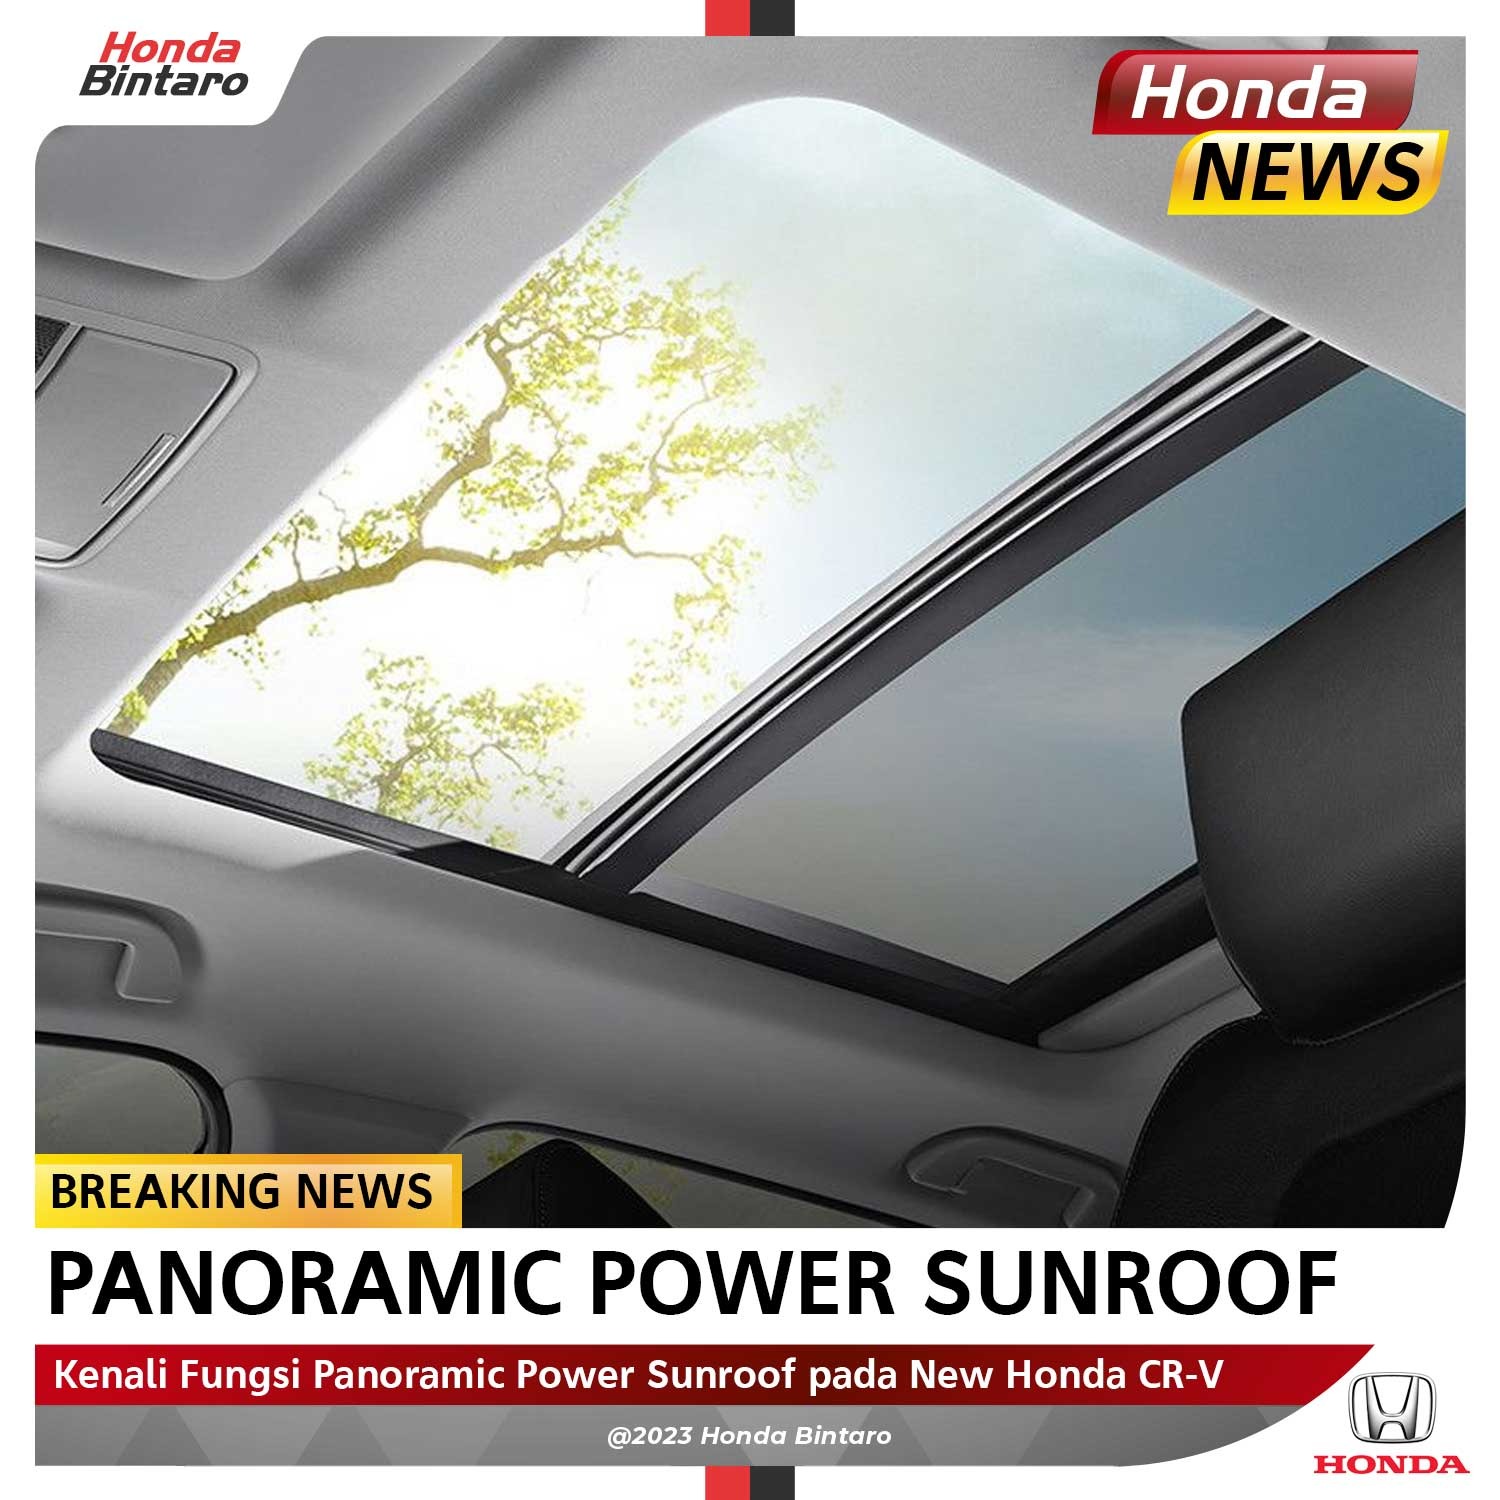 Kenali Fungsi Panoramic Power Sunroof pada New Honda CR-V